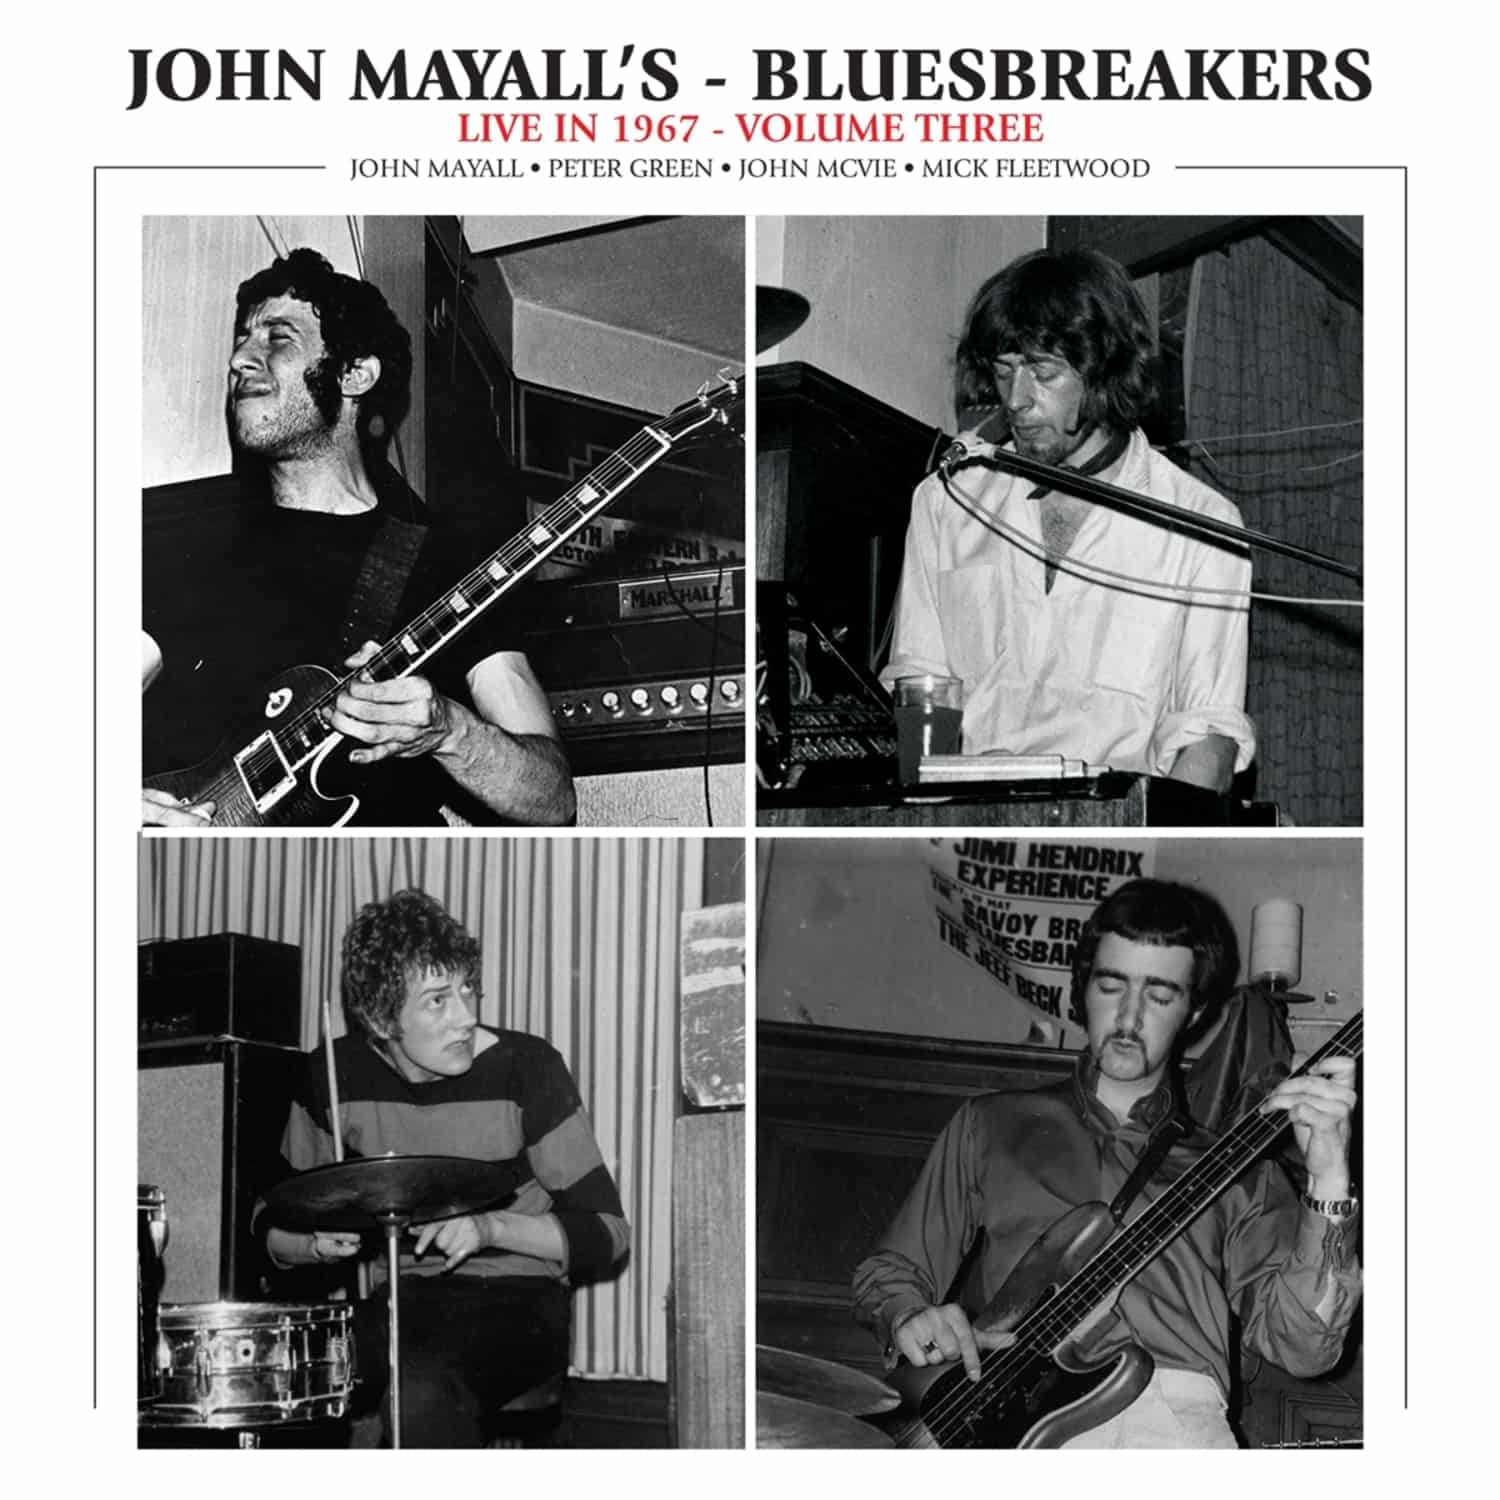  John Mayall & The Bluesbreakers - LIVE IN 1967 VOL.3 